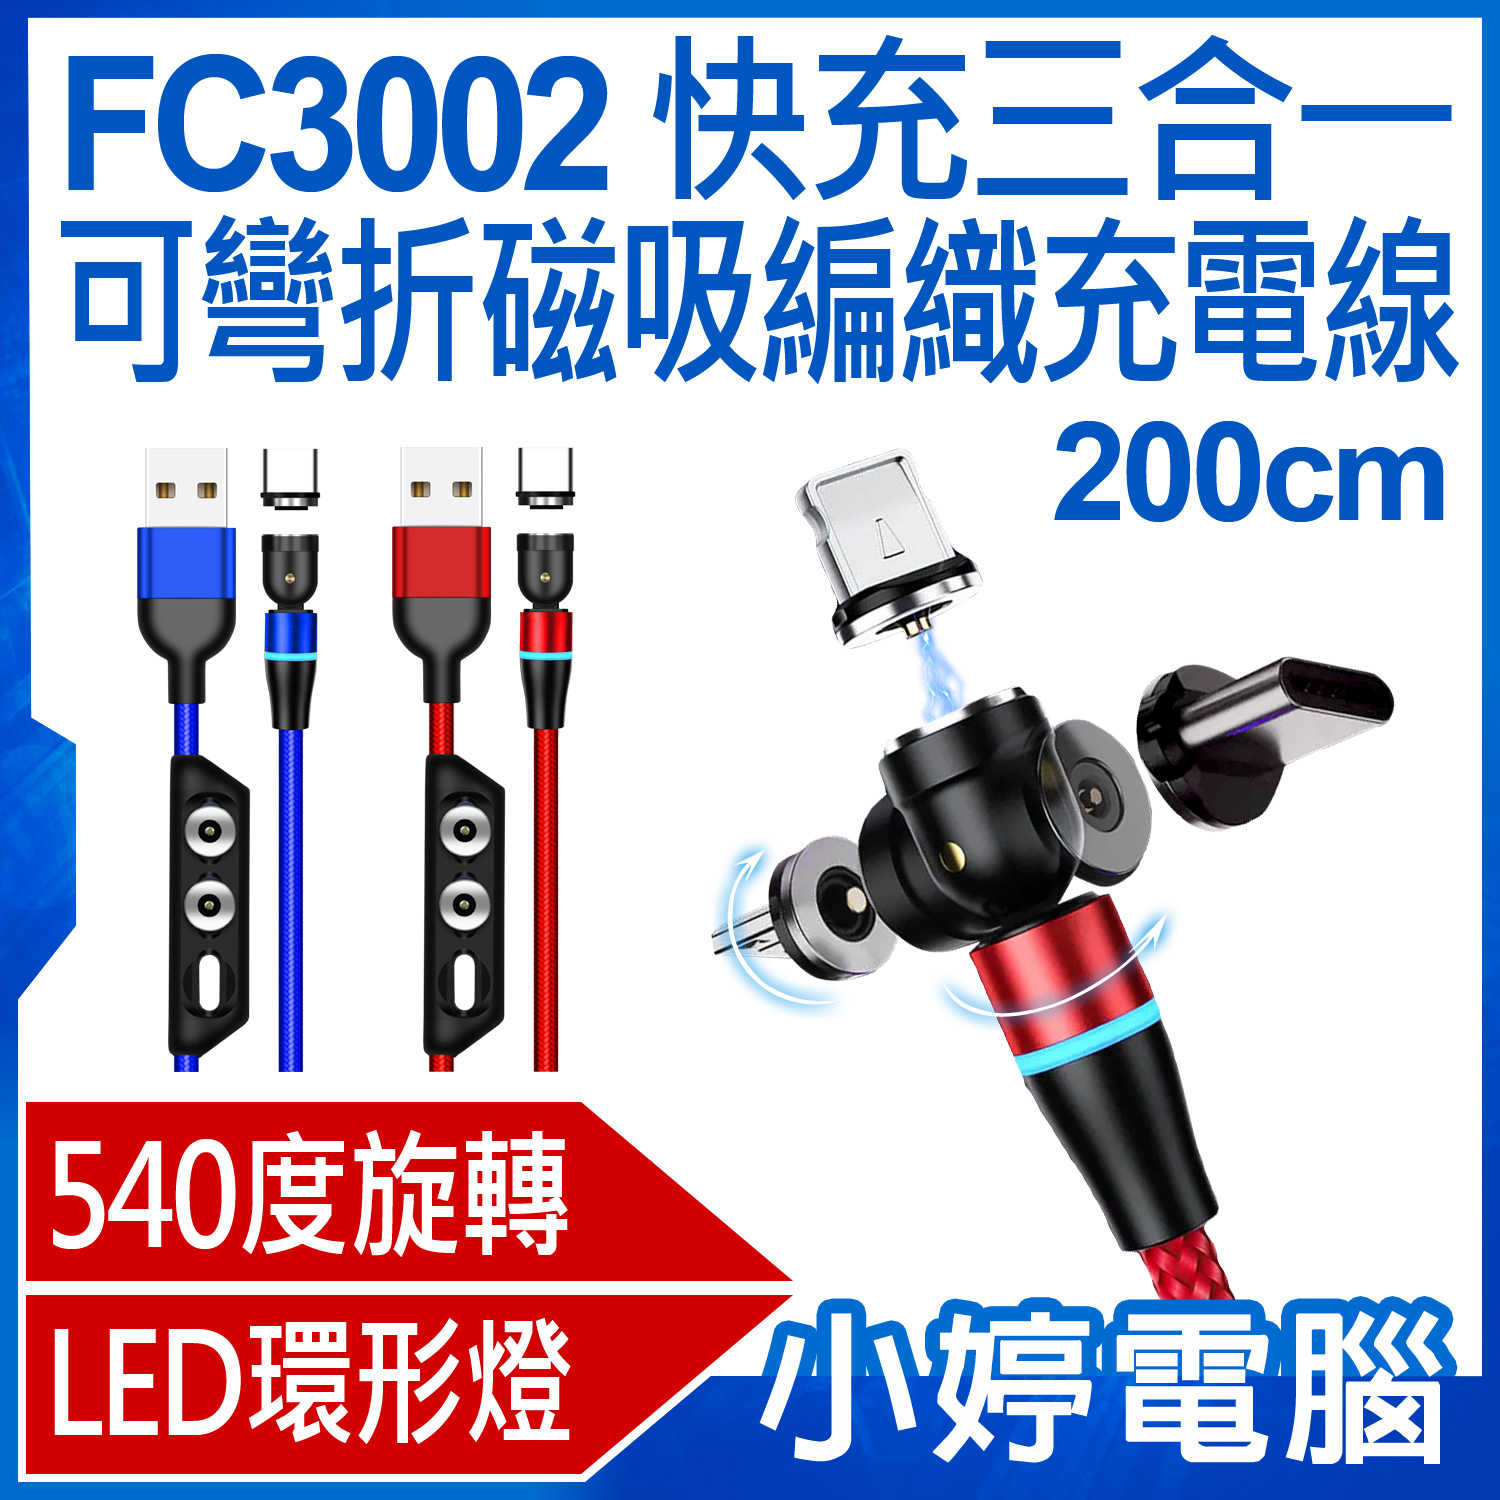 【小婷電腦】FC3002 快充三合一可彎折磁吸編織充電線 540度旋轉 LED燈 磁頭收納器 200cm